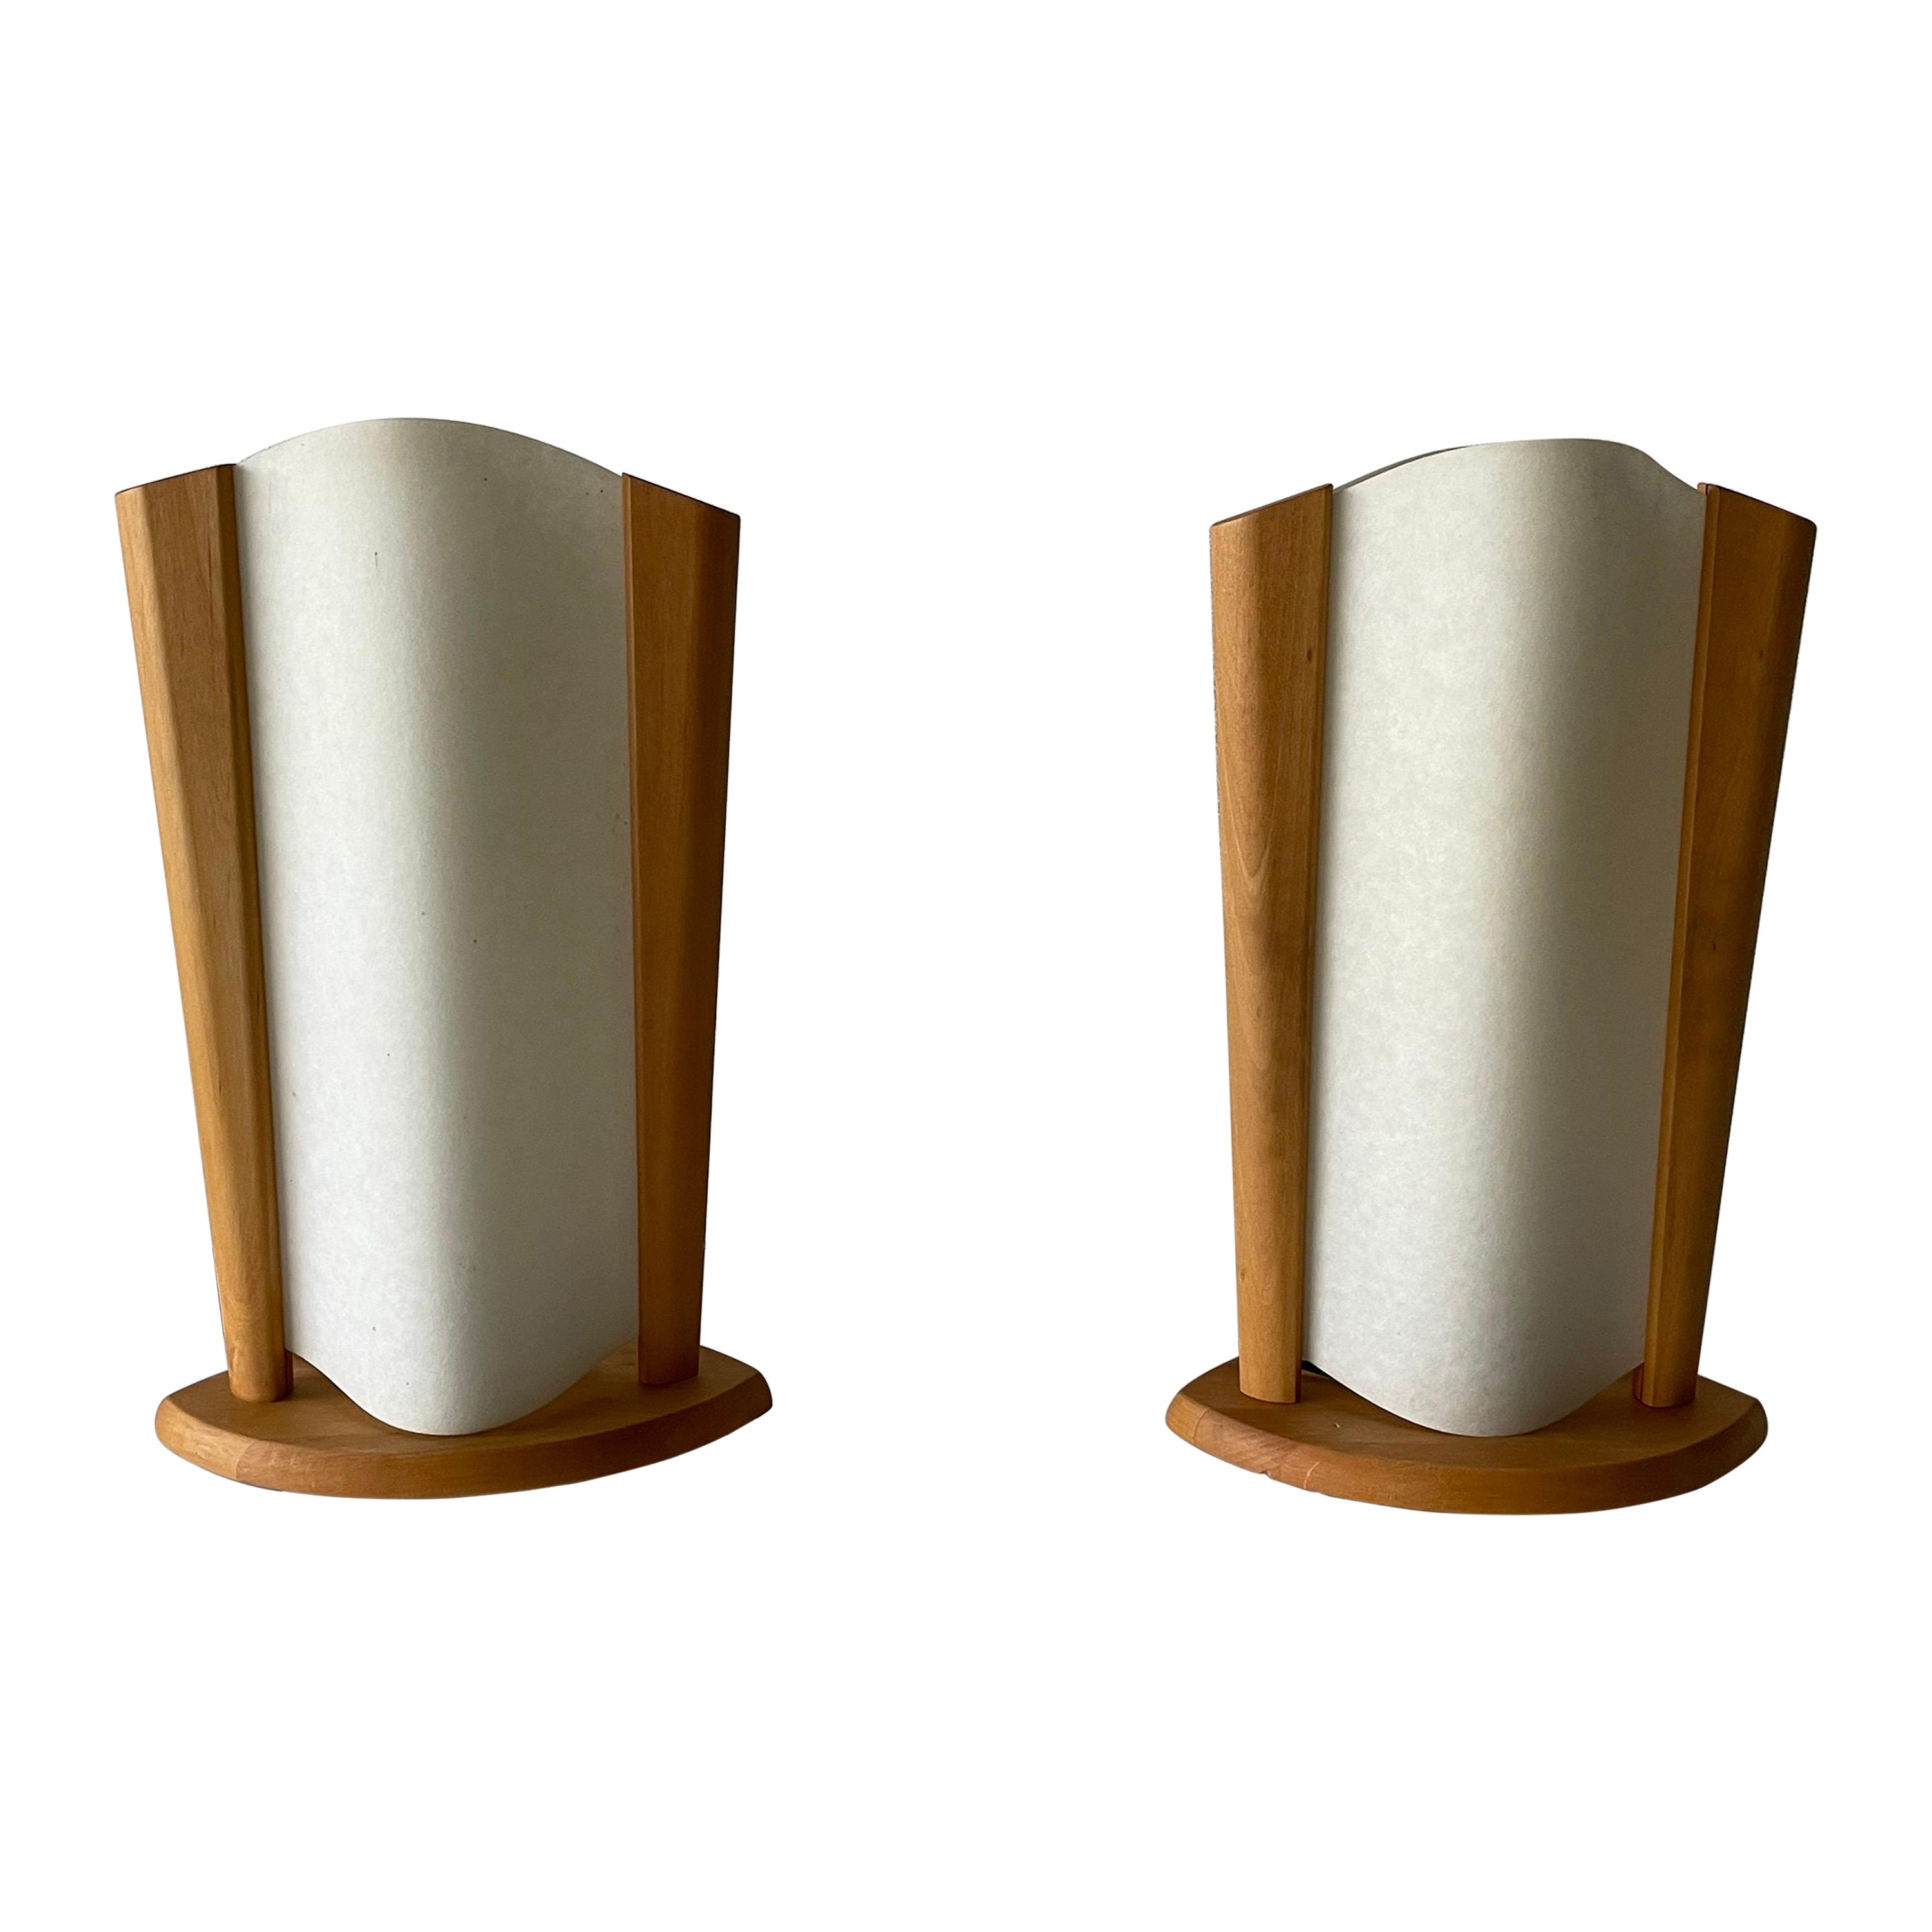 Paar Tischlampen aus Kunststoffpapier und Holzrahmen von Domus, 1980er Jahre, Italien